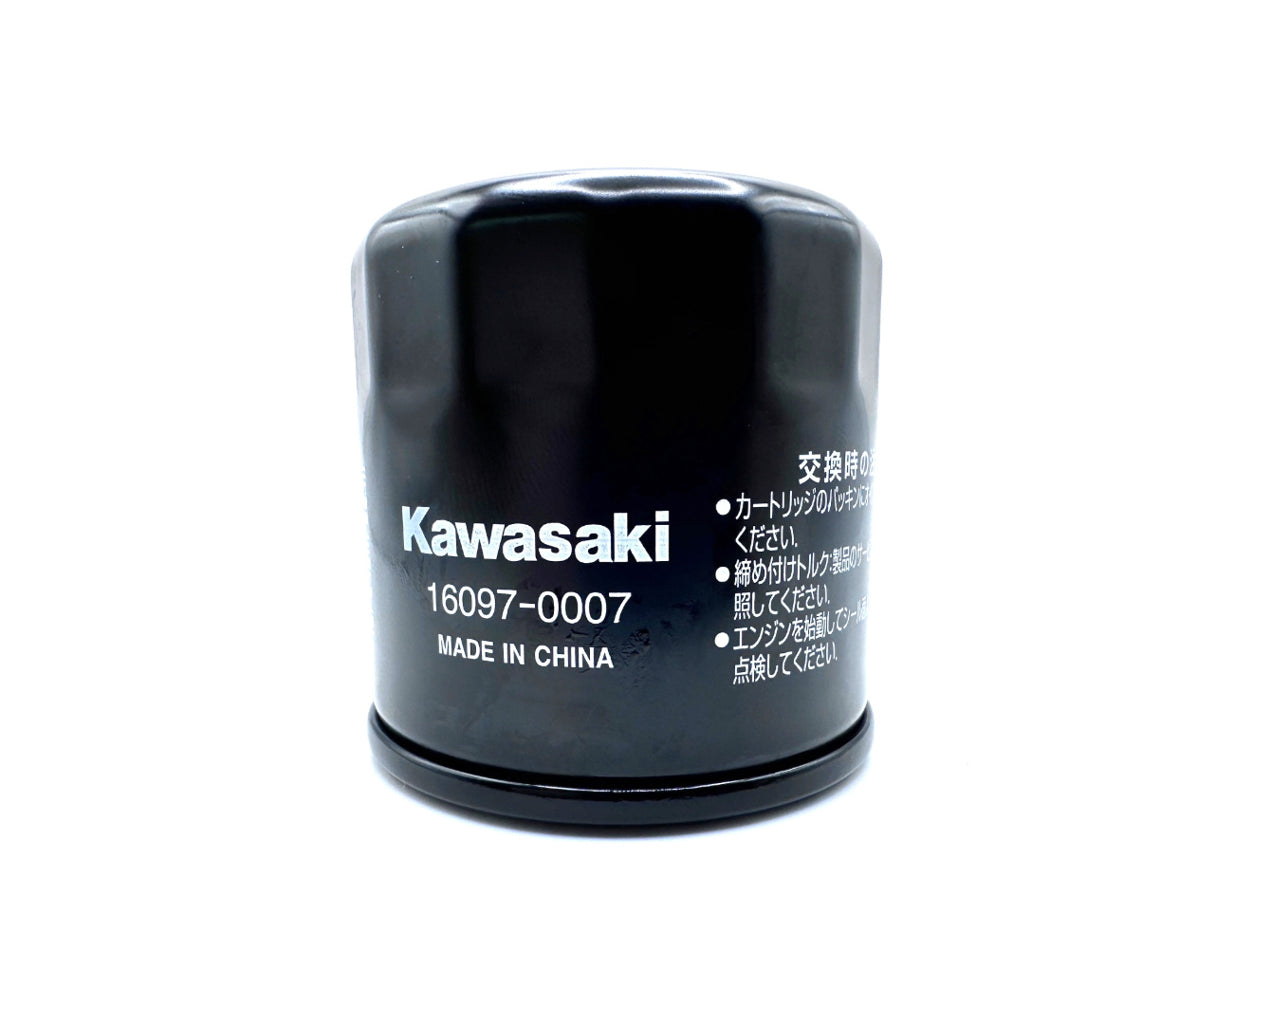 Kawasaki OEM Oil Filter KVF750 Mule Pro Teryx Ridge Jet Ski 16097-0007